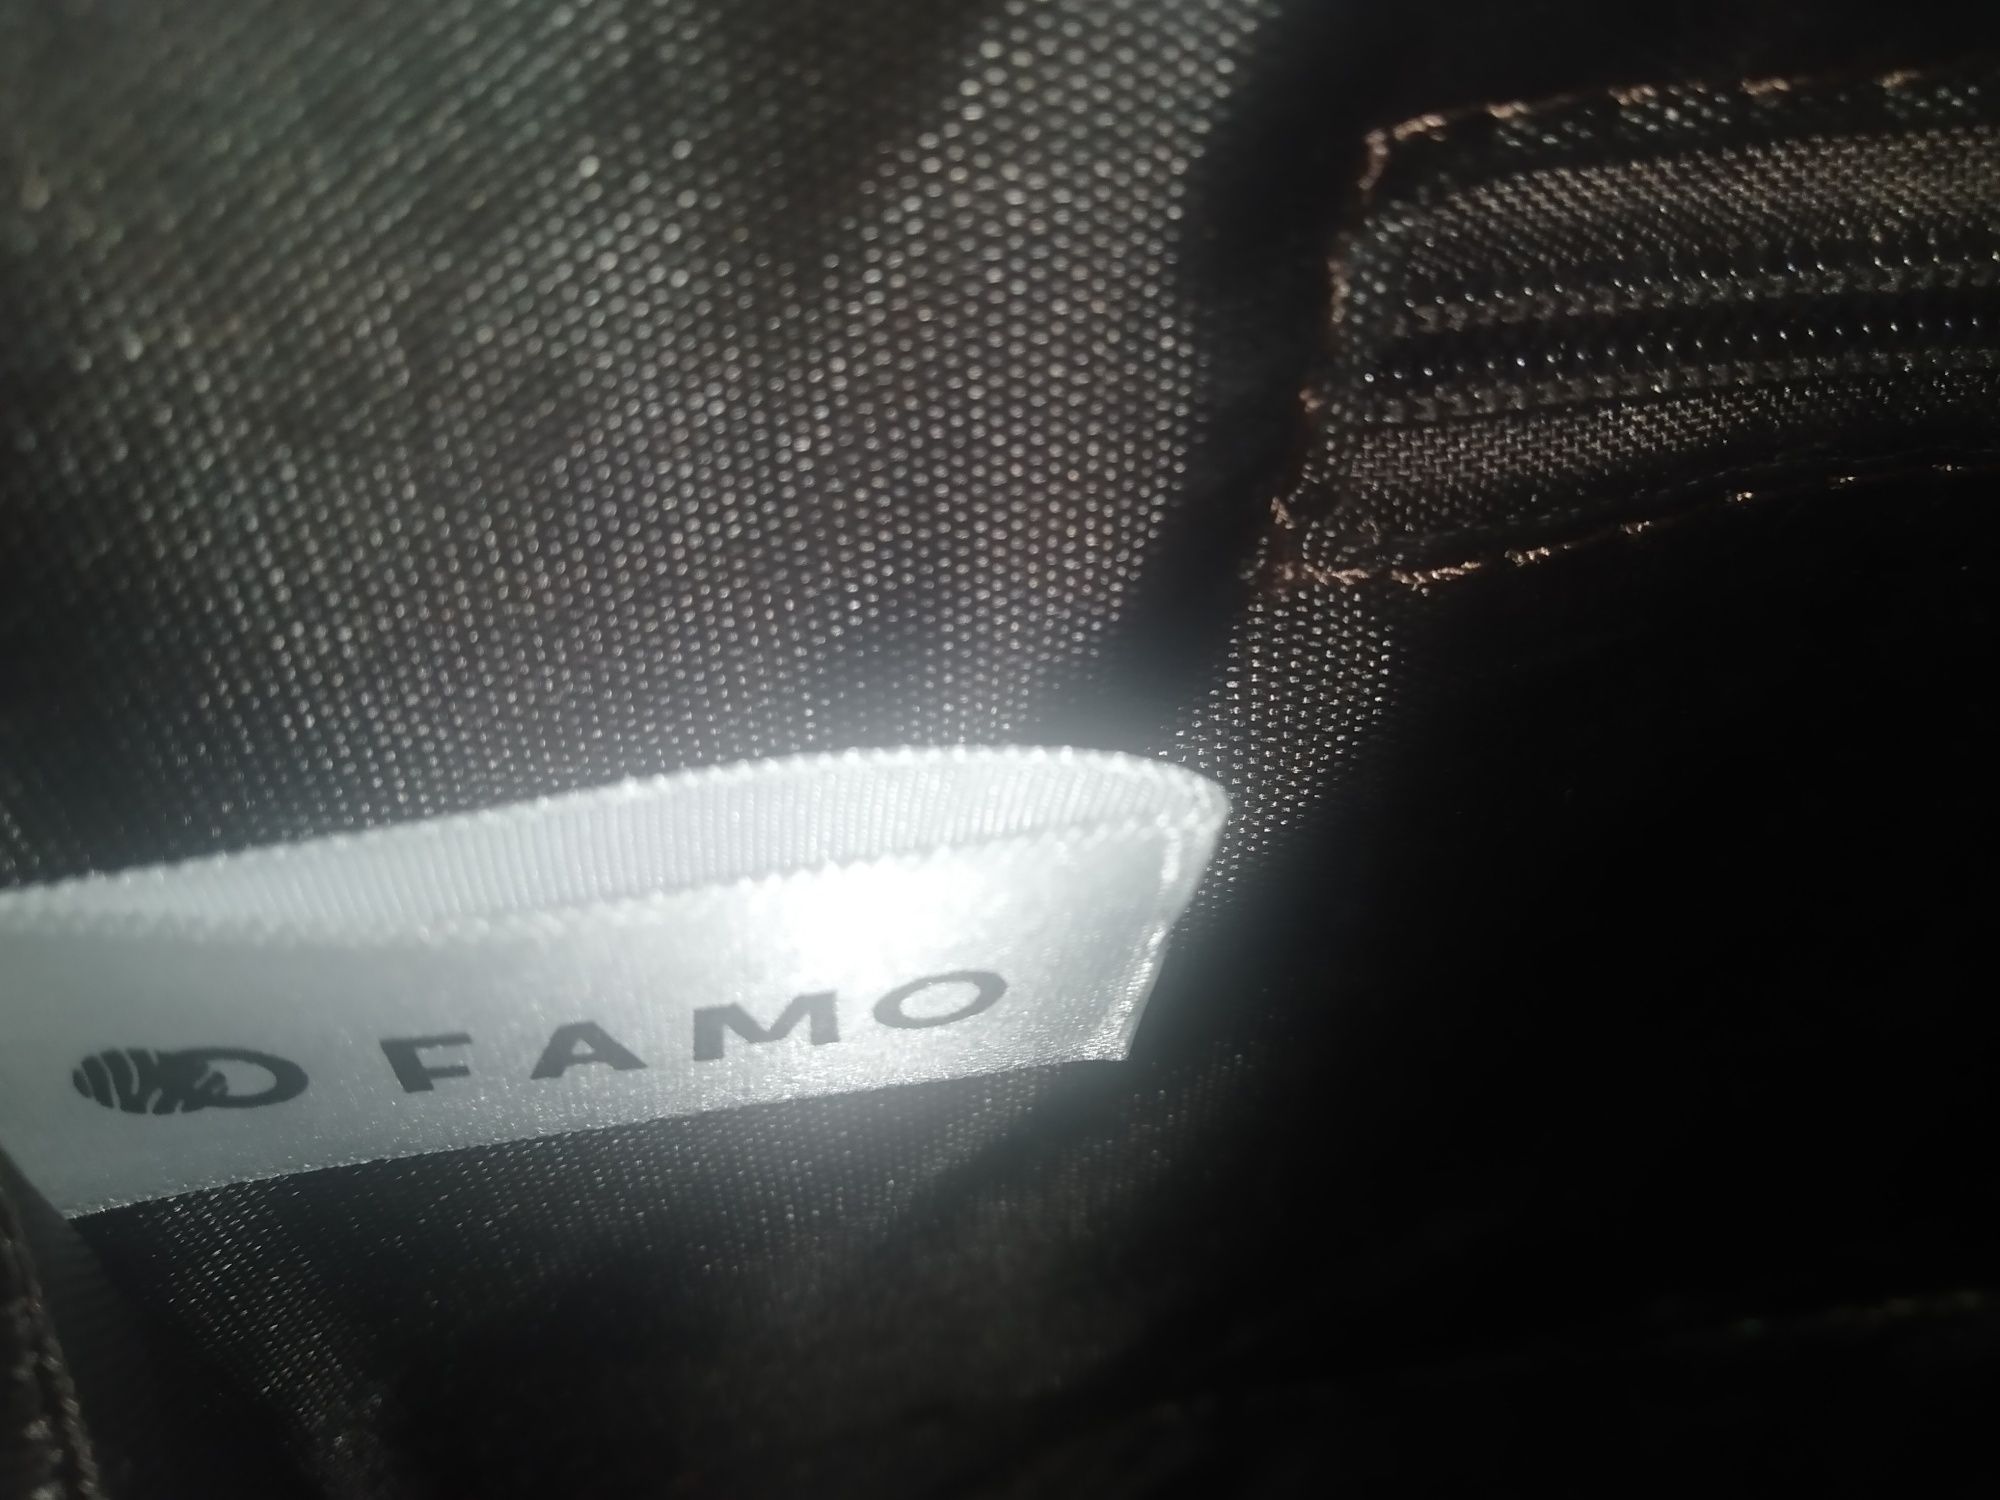 Продам сумку FAMO состояние идеальное